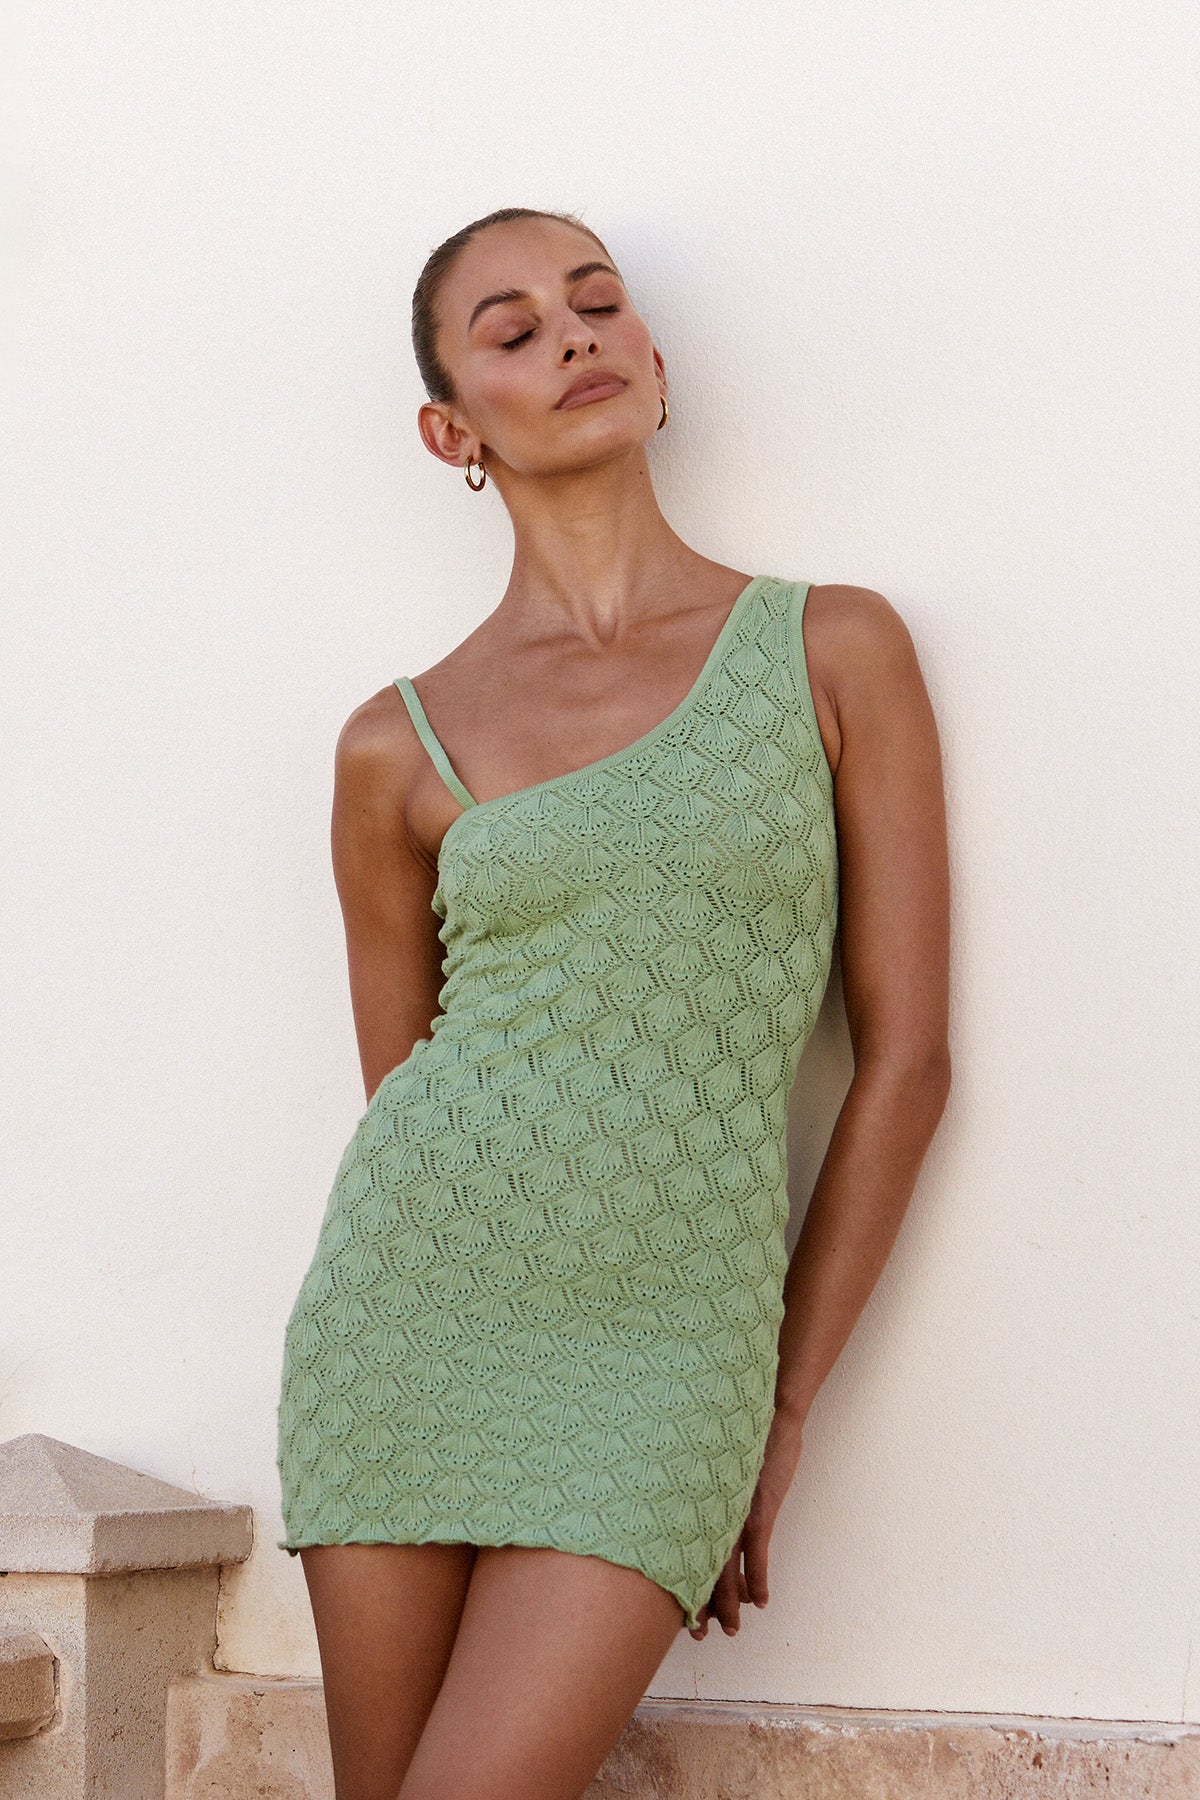 Perfect Stranger Golden Hour Crochet Mini Dress Green